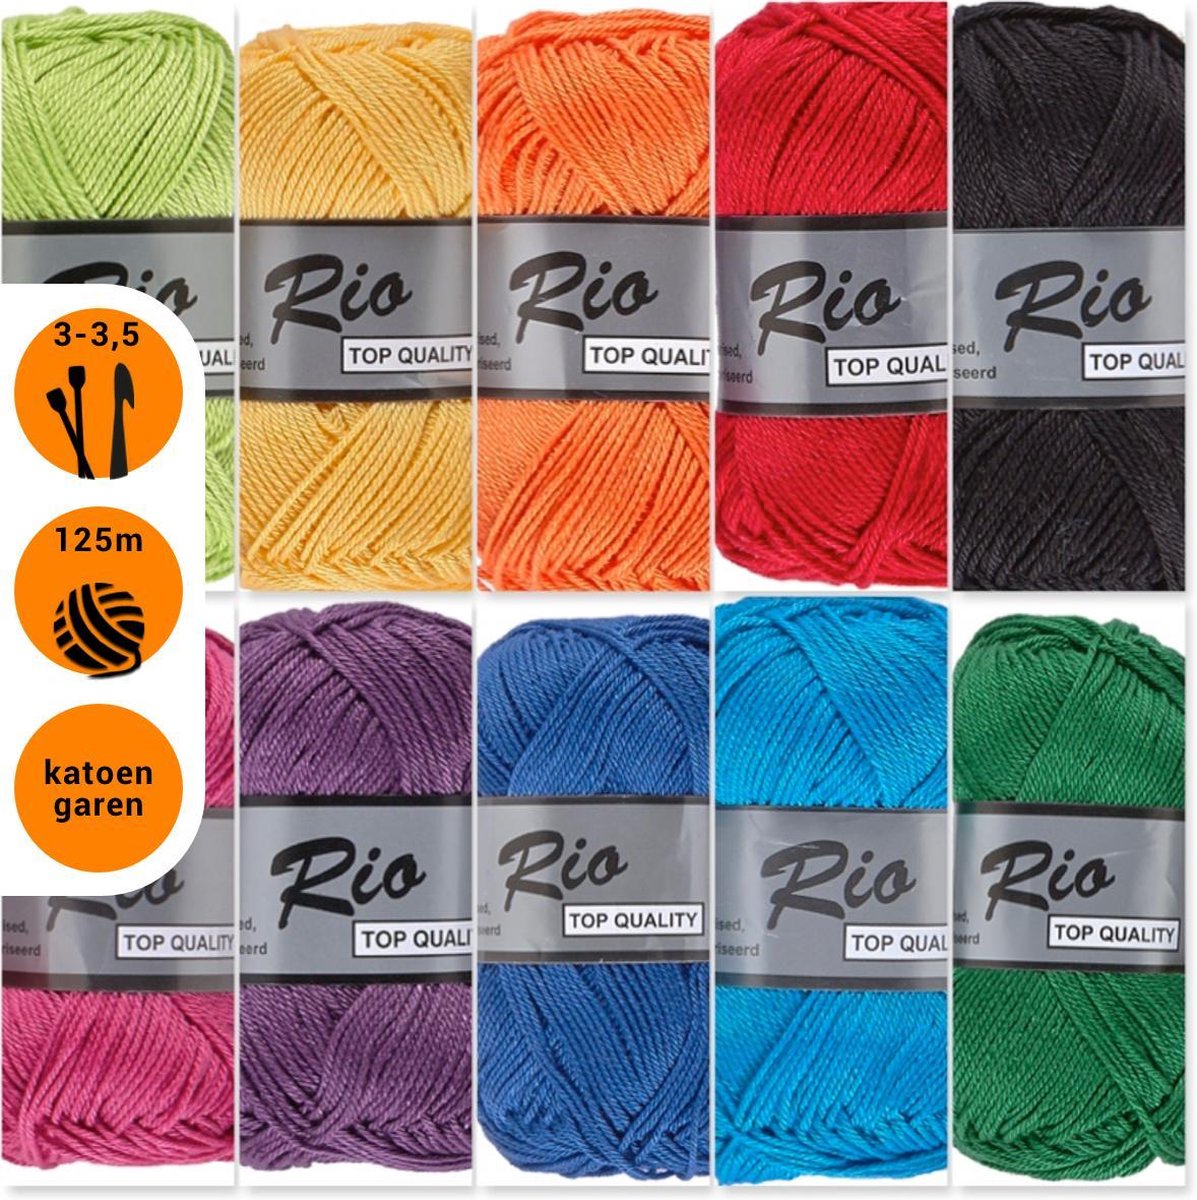 Shuraba Crimineel handelaar Lammy yarns Rio katoen garen pakket - regenboog kleuren - 10 bollen |  bol.com